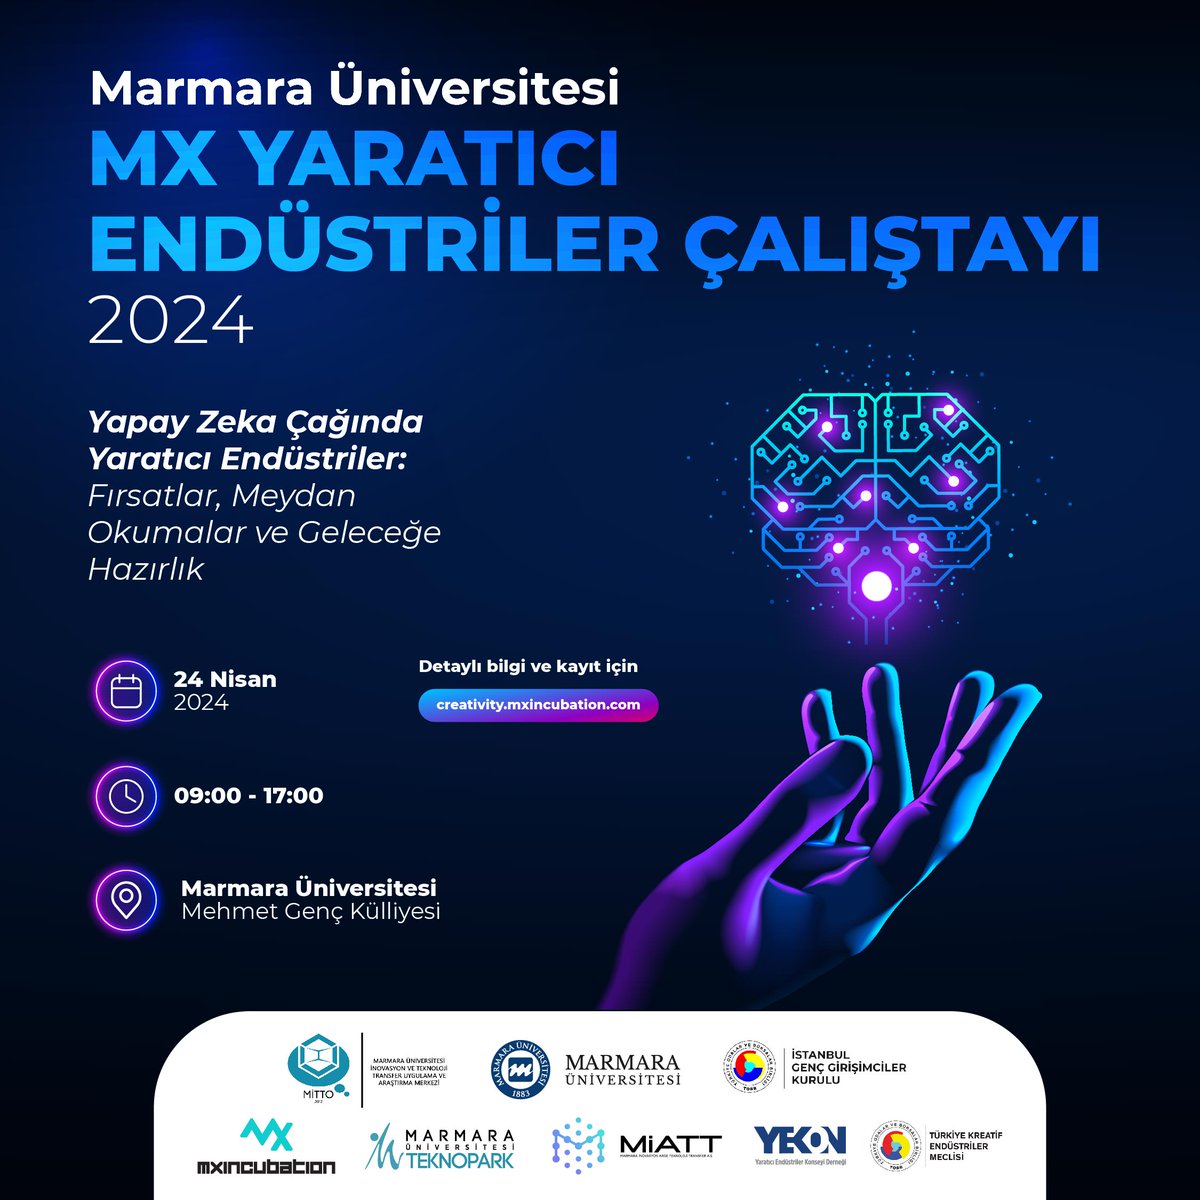 Marmara Üniversitesi Mx Yaratıcı Endüstriler Çalıştayı 2024 için Hazırız! Detaylı bilgi ve kayıt için: kreatif.mxincubation.com #mxincubation #yaratıcıendüstriler #çalıştay #workshop #yapayzekâ #girişimcilik